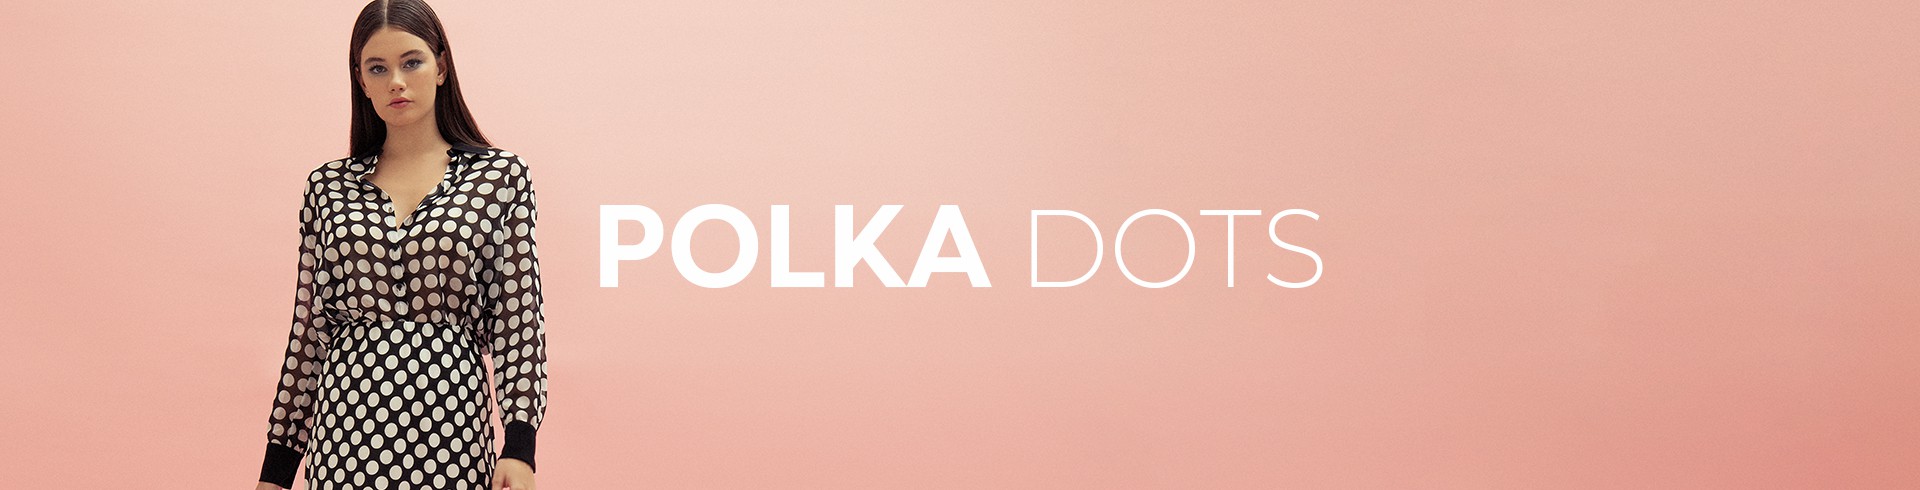 Polka dots everywhere